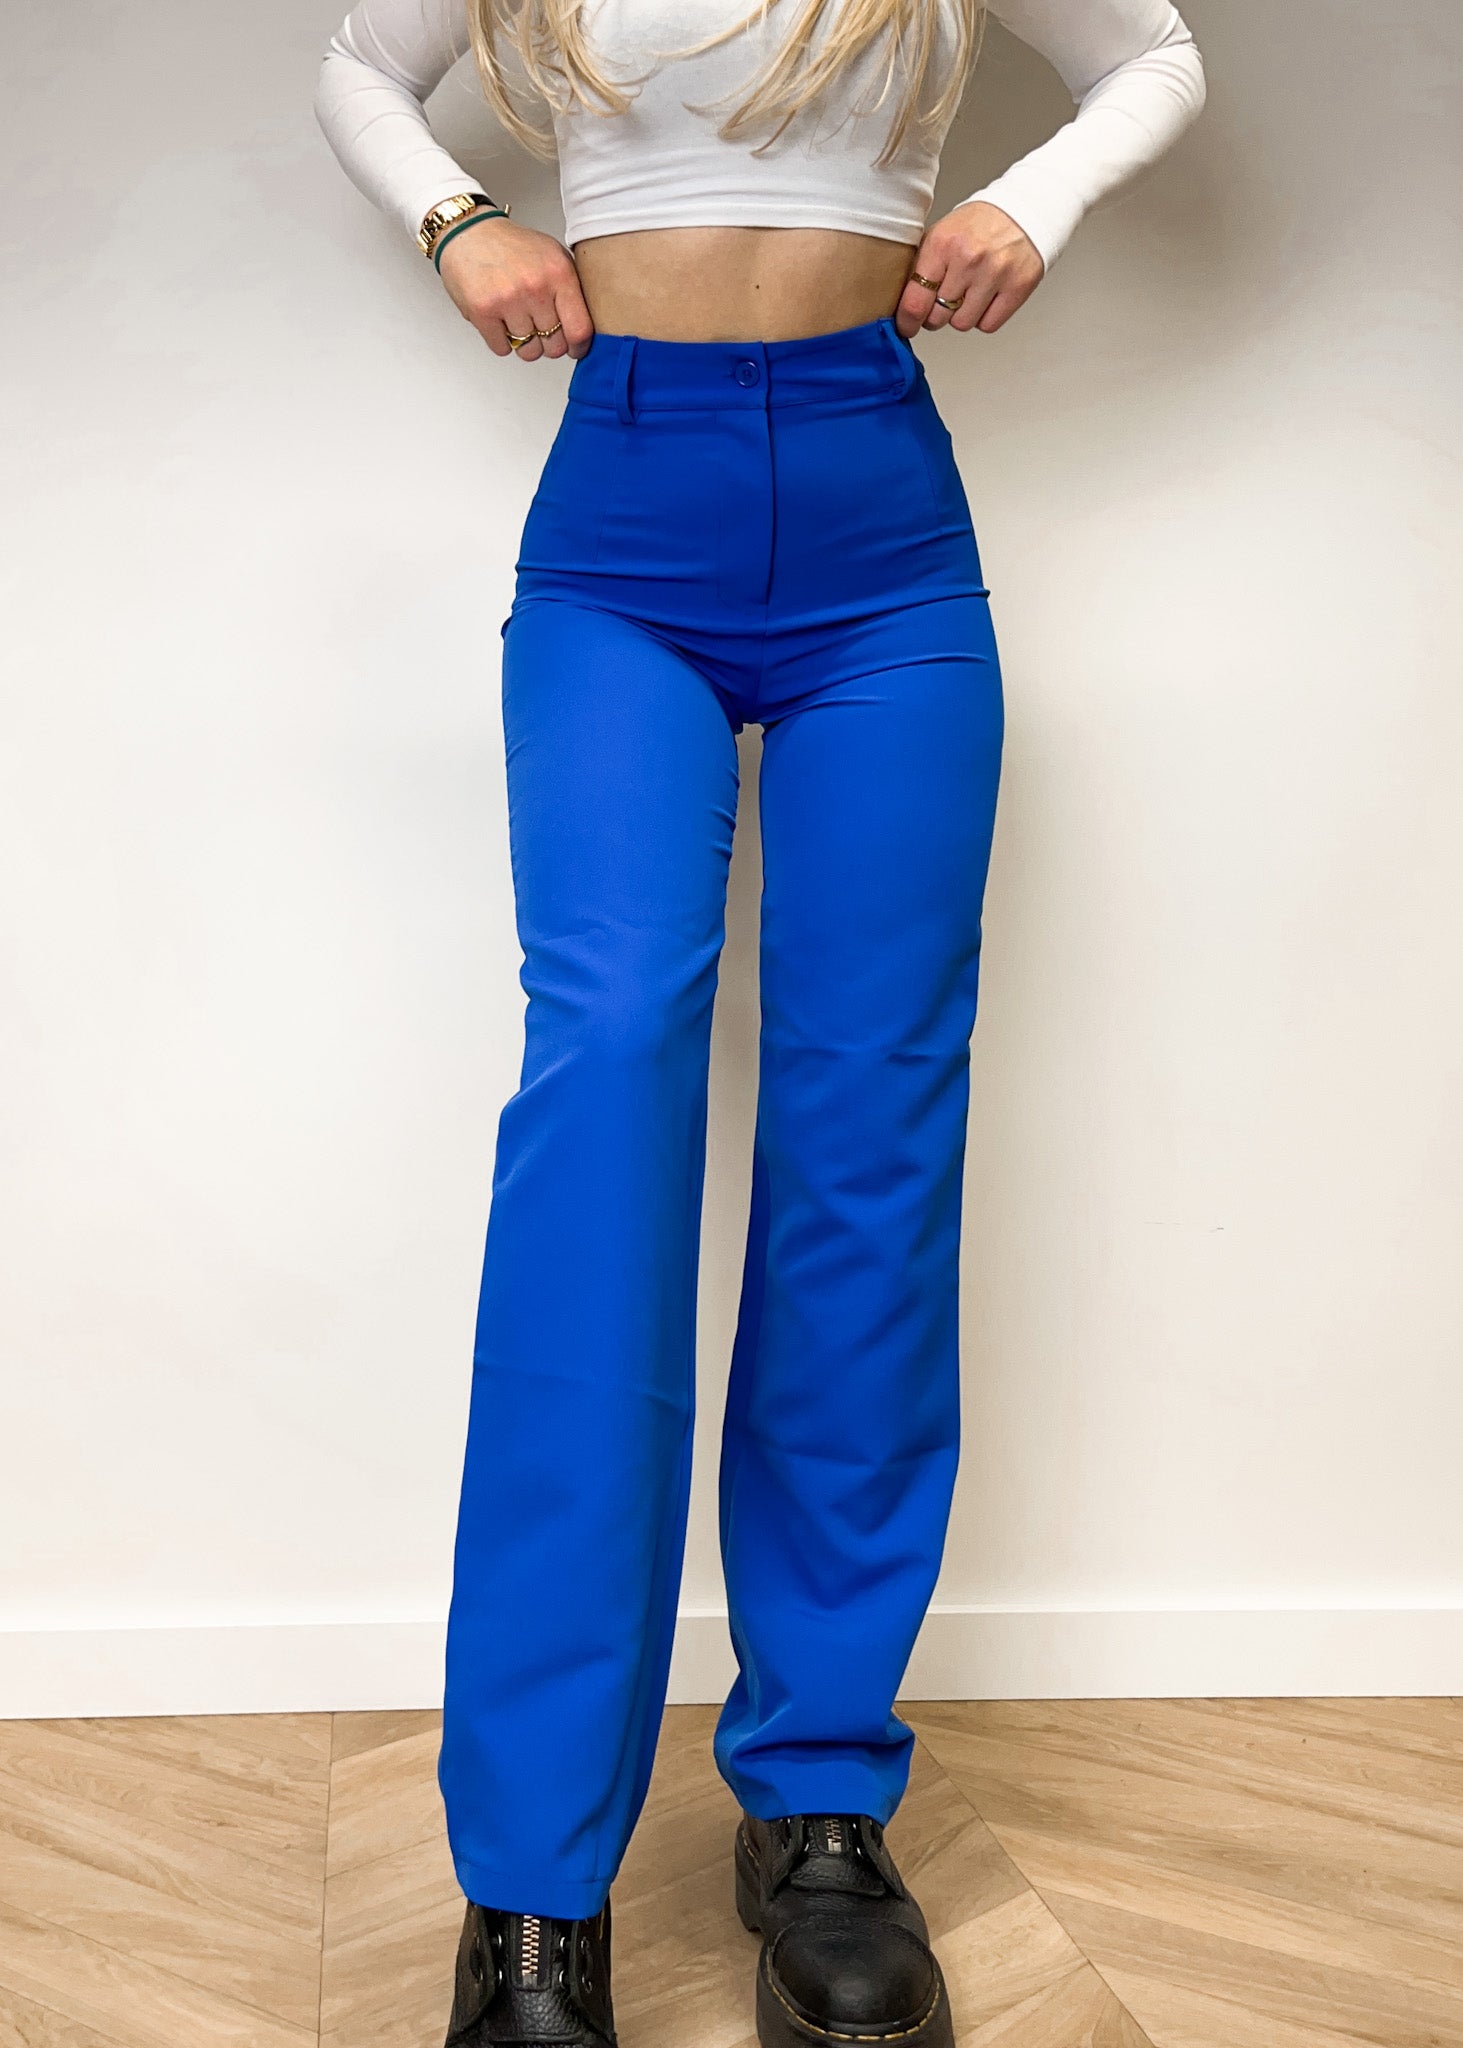 Pantalon jambe droit bleu électrique classique (RÉGULIER)